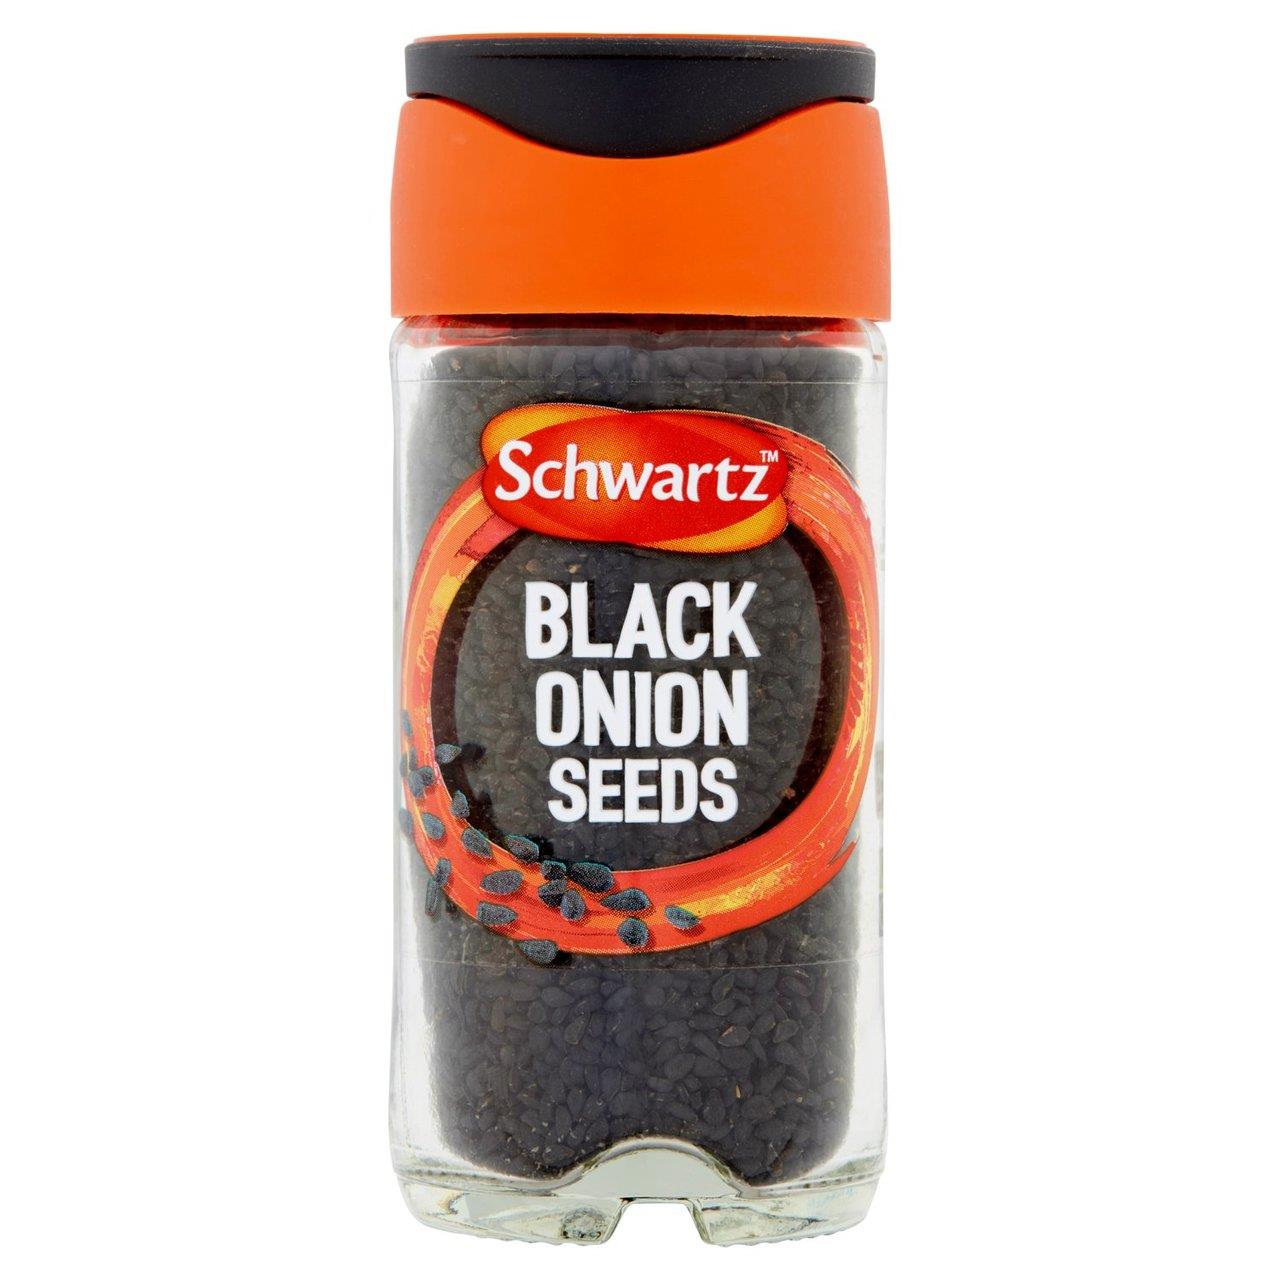 Schwartz Black Onion Seeds Jar 42g